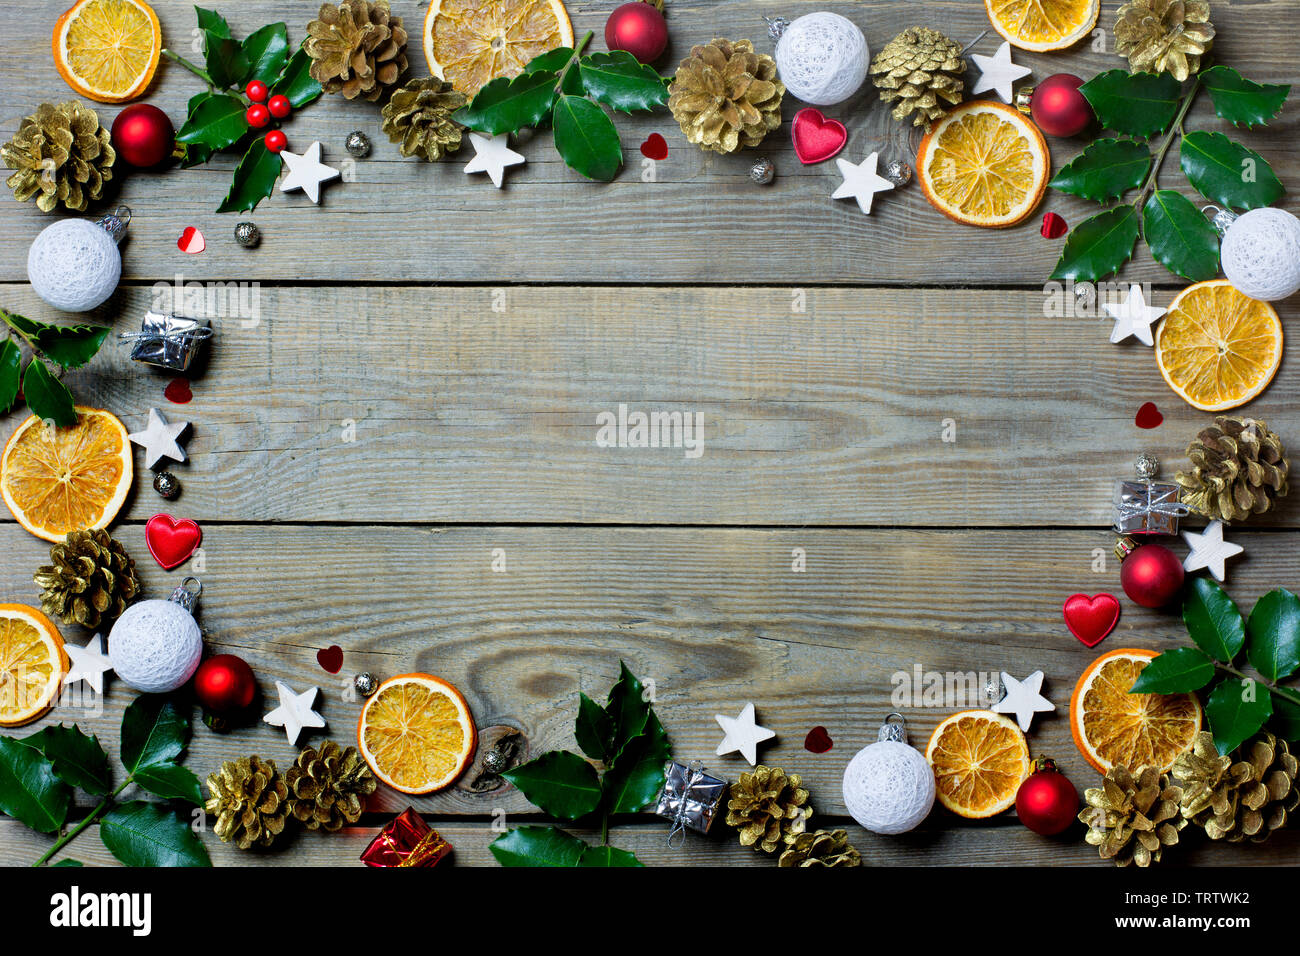 Weihnachten Zusammensetzung mit Orangenscheiben, Kegel, heiligen, Sterne, kleine Geschenkboxen, rote und weiße Kugeln und Herzen auf Holz- Hintergrund Stockfoto